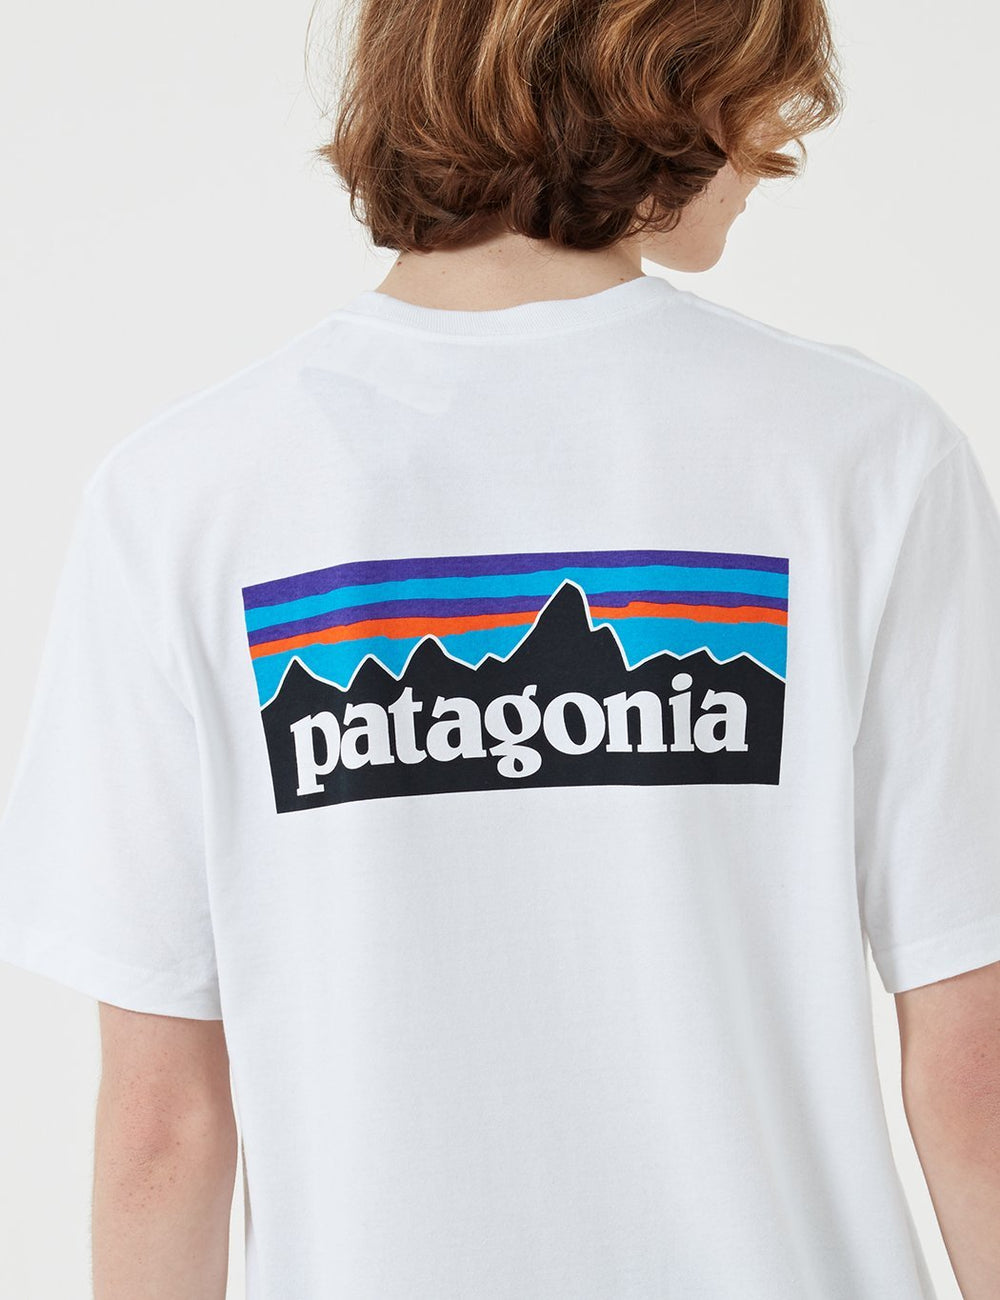 パタゴニアP-6ロゴポケットレスポンシビリ-Tシャツ-ホワイト